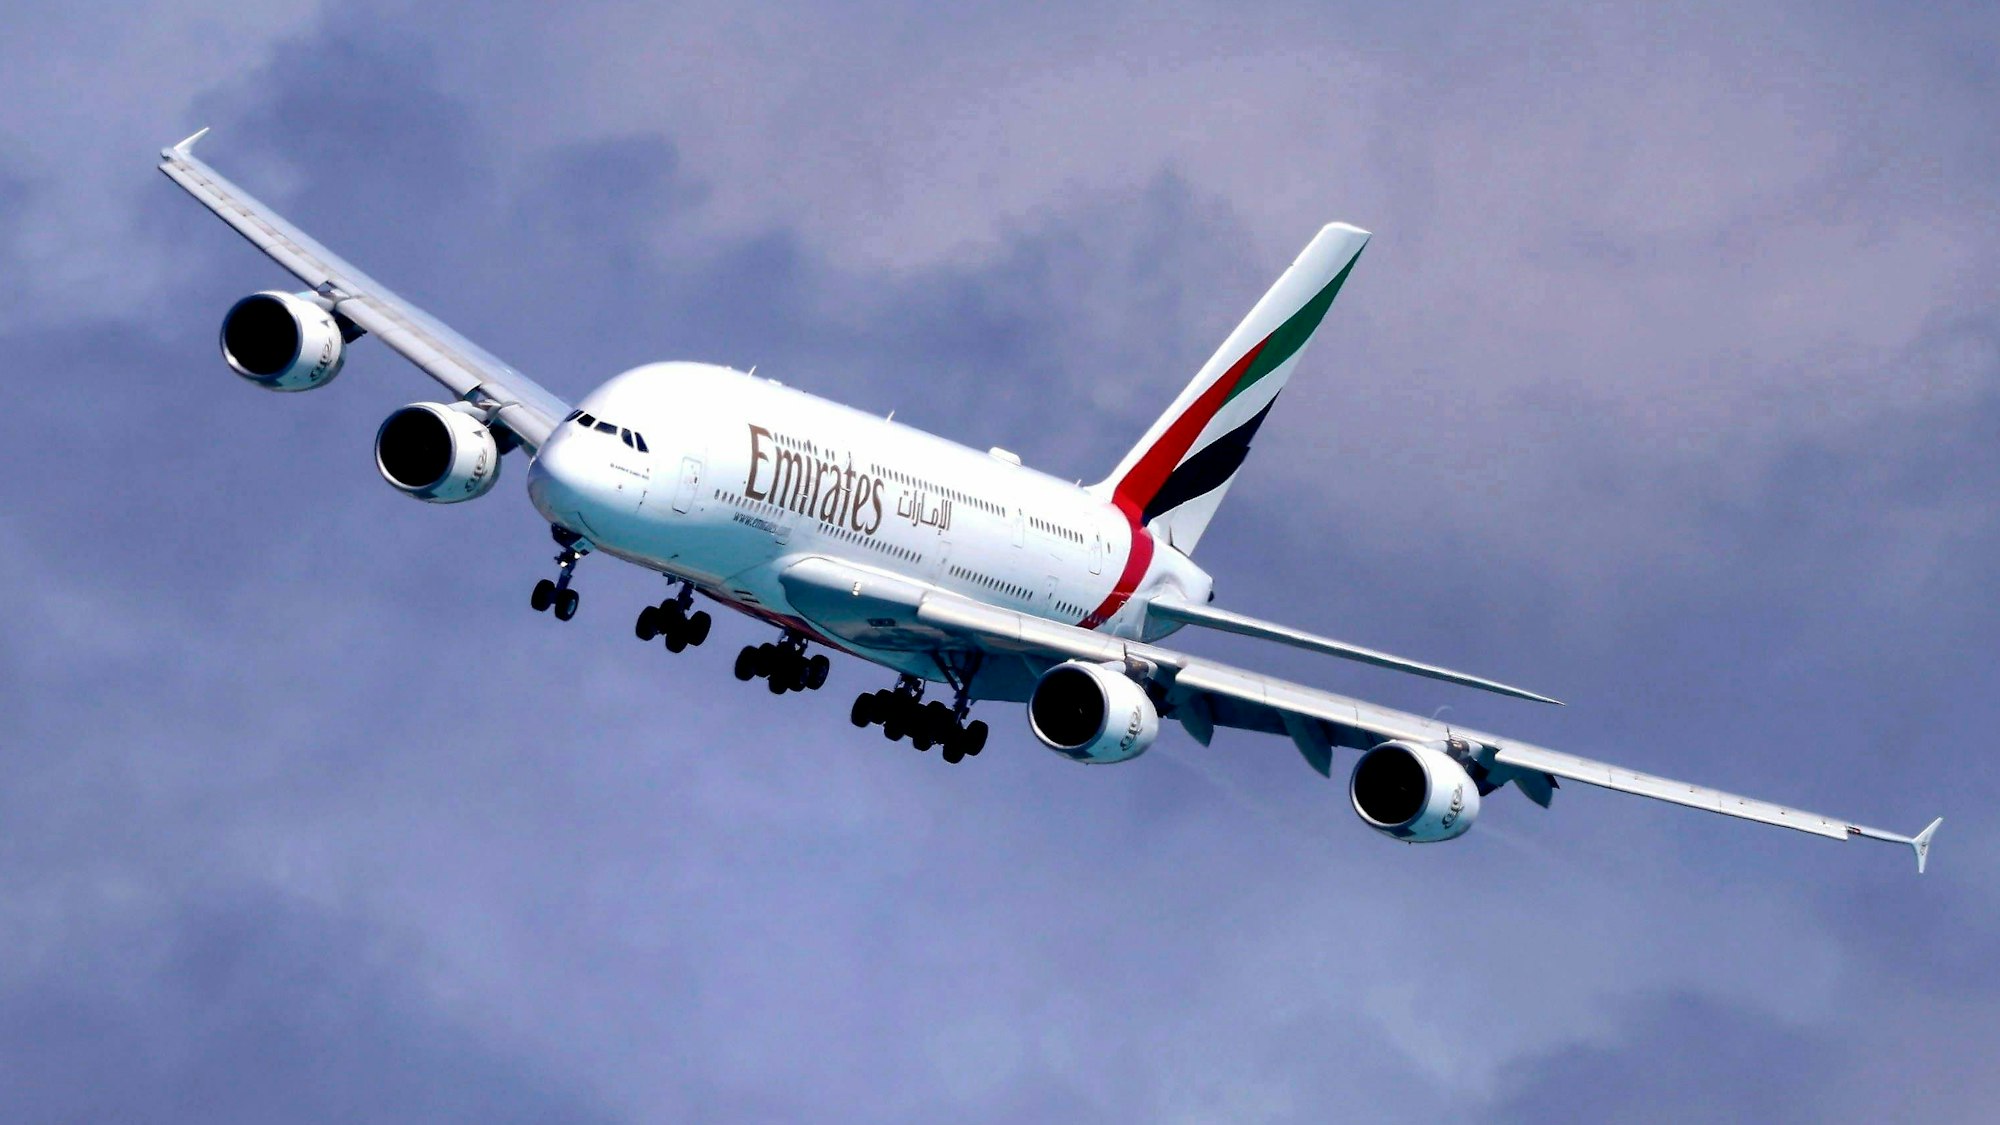 Ein Airbus A380 der arabischen Fluggesellschaft Emirates im Landeanflug während eins Unwetters. Das Flugzeug liegt schräg in der Luft. (Symbolbild)